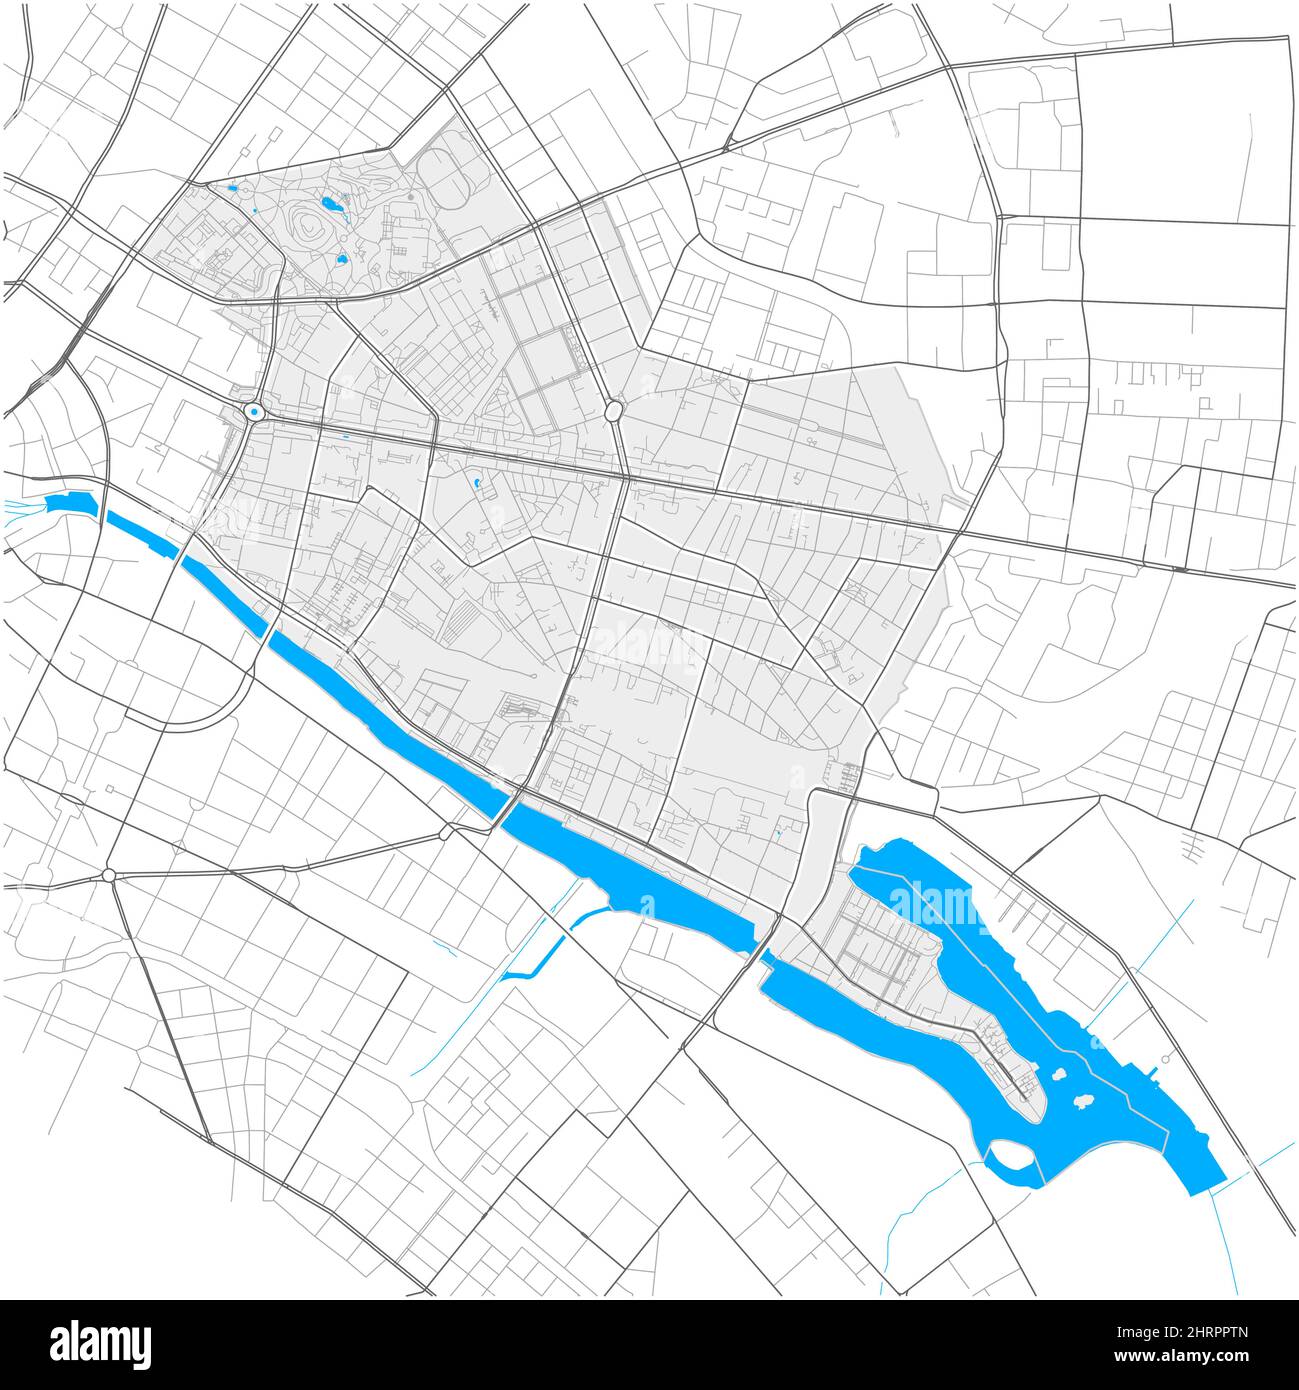 Friedrichshain, Berlino, DEUTSCHLAND, mappa vettoriale ad alto dettaglio con confini della città e percorsi modificabili. Contorni bianchi per le strade principali. Molti percorsi più piccoli Illustrazione Vettoriale